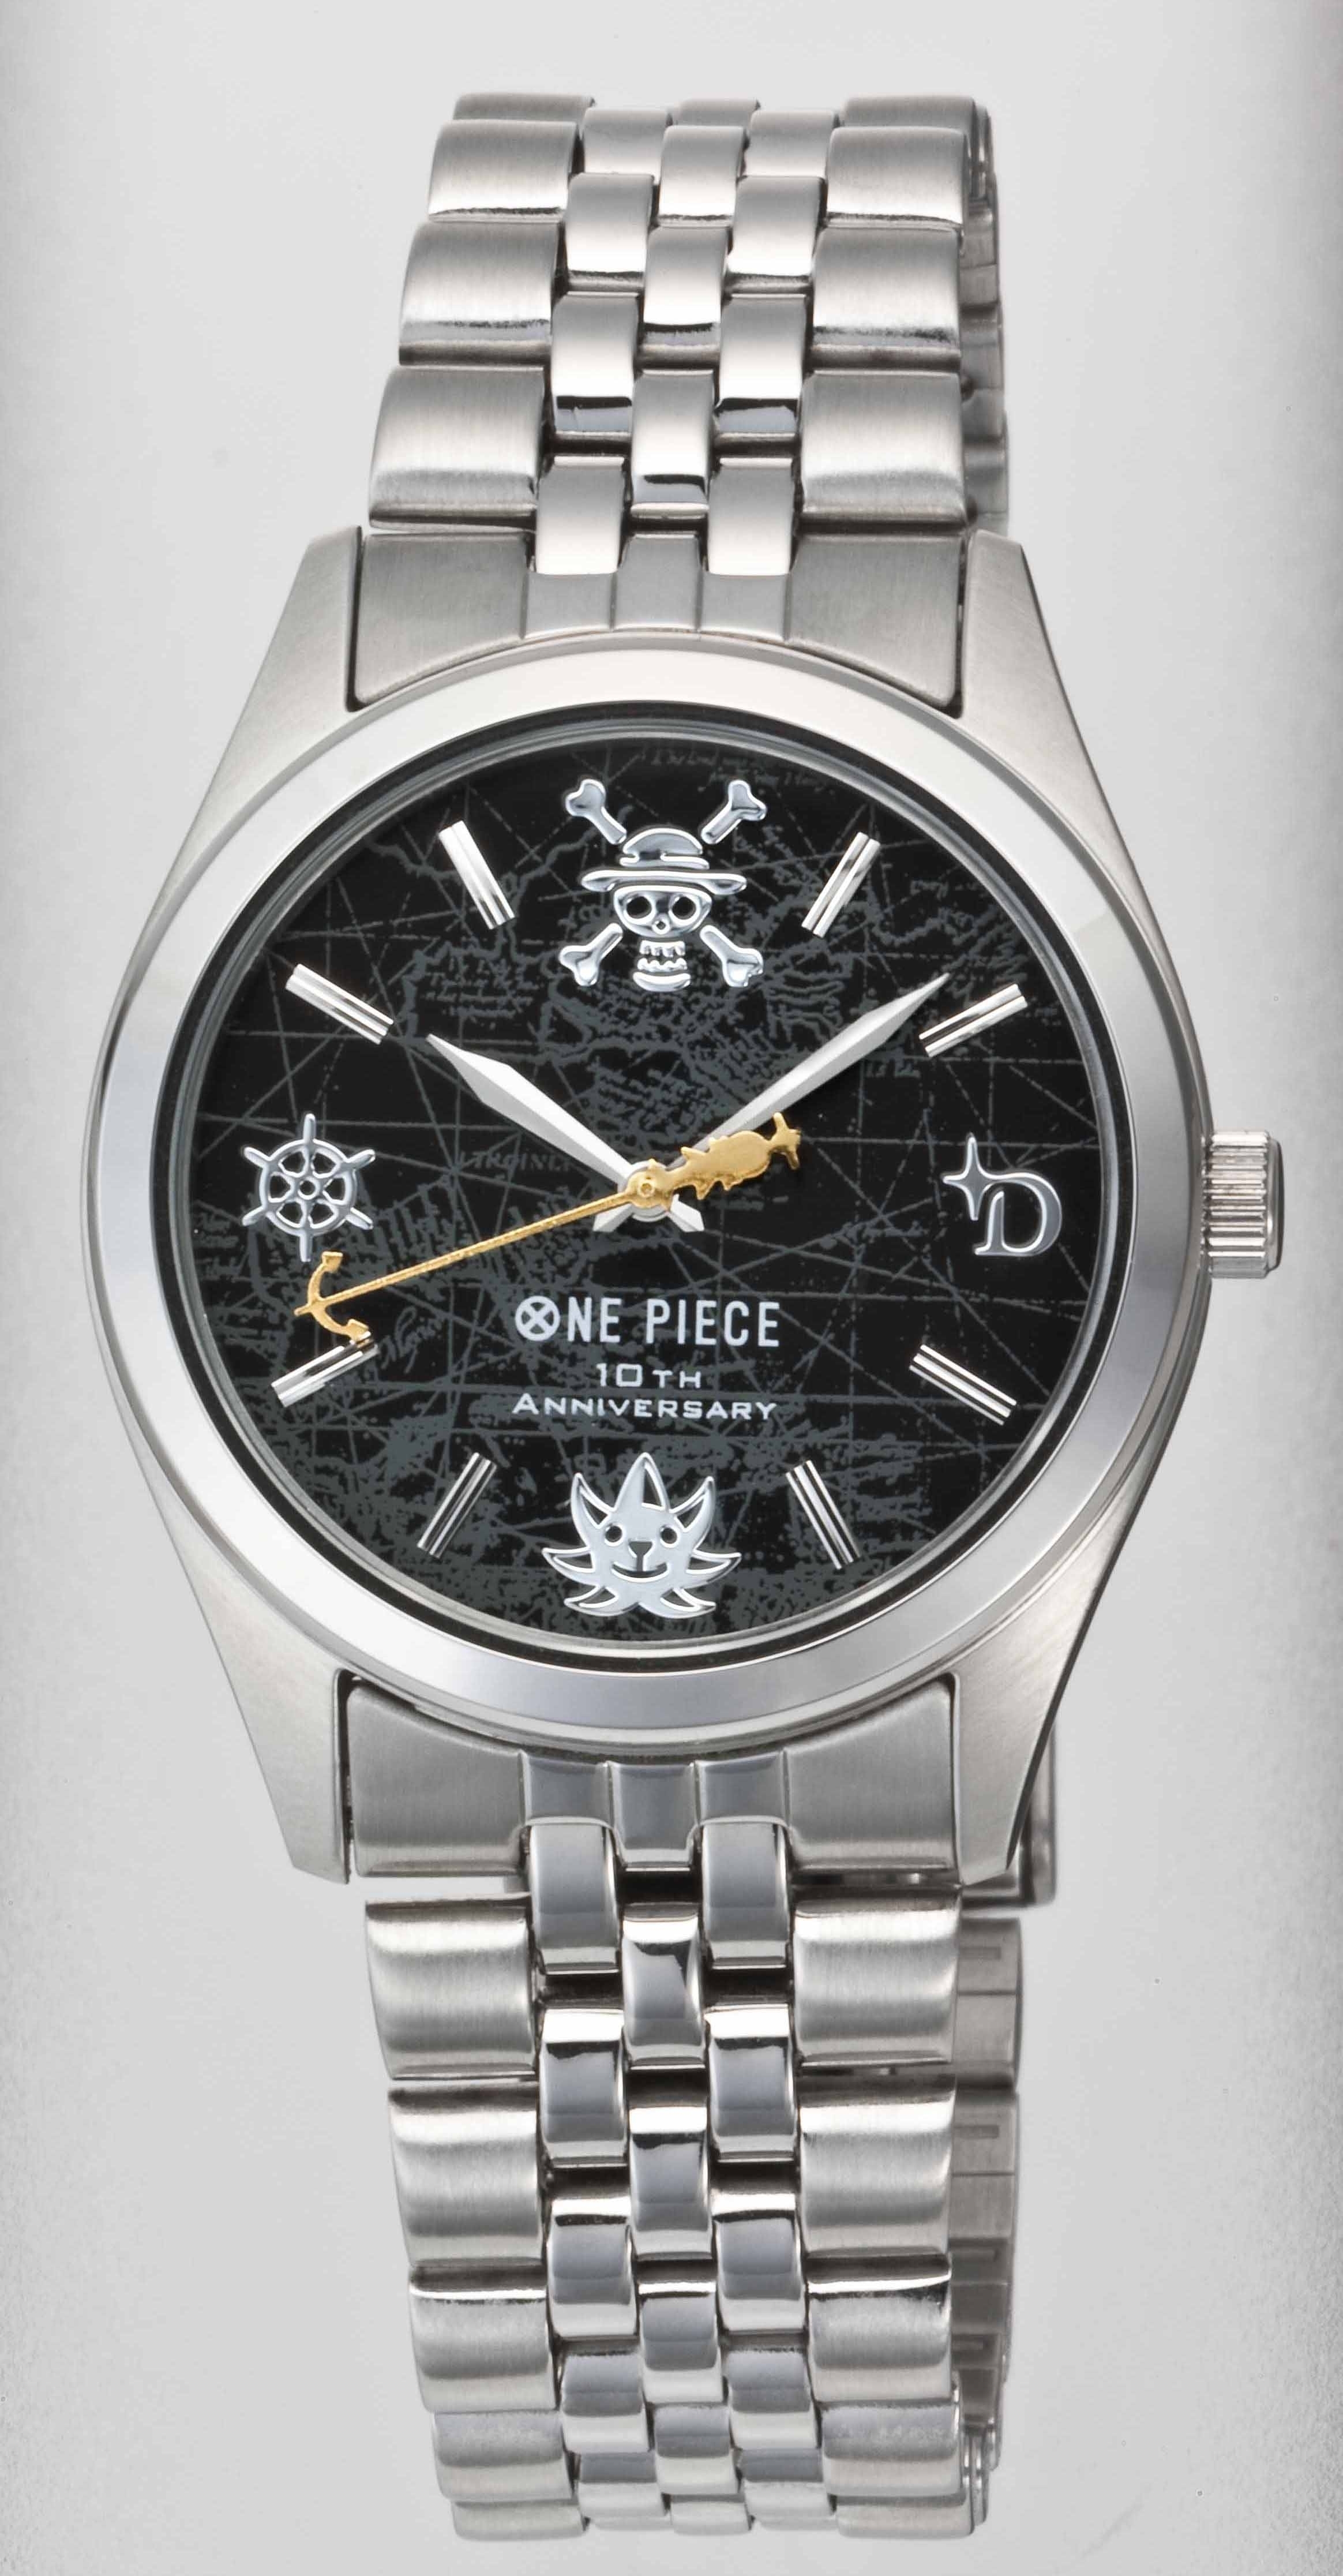 40×35mmワンピース10周年記念公式ウォッチ　腕時計